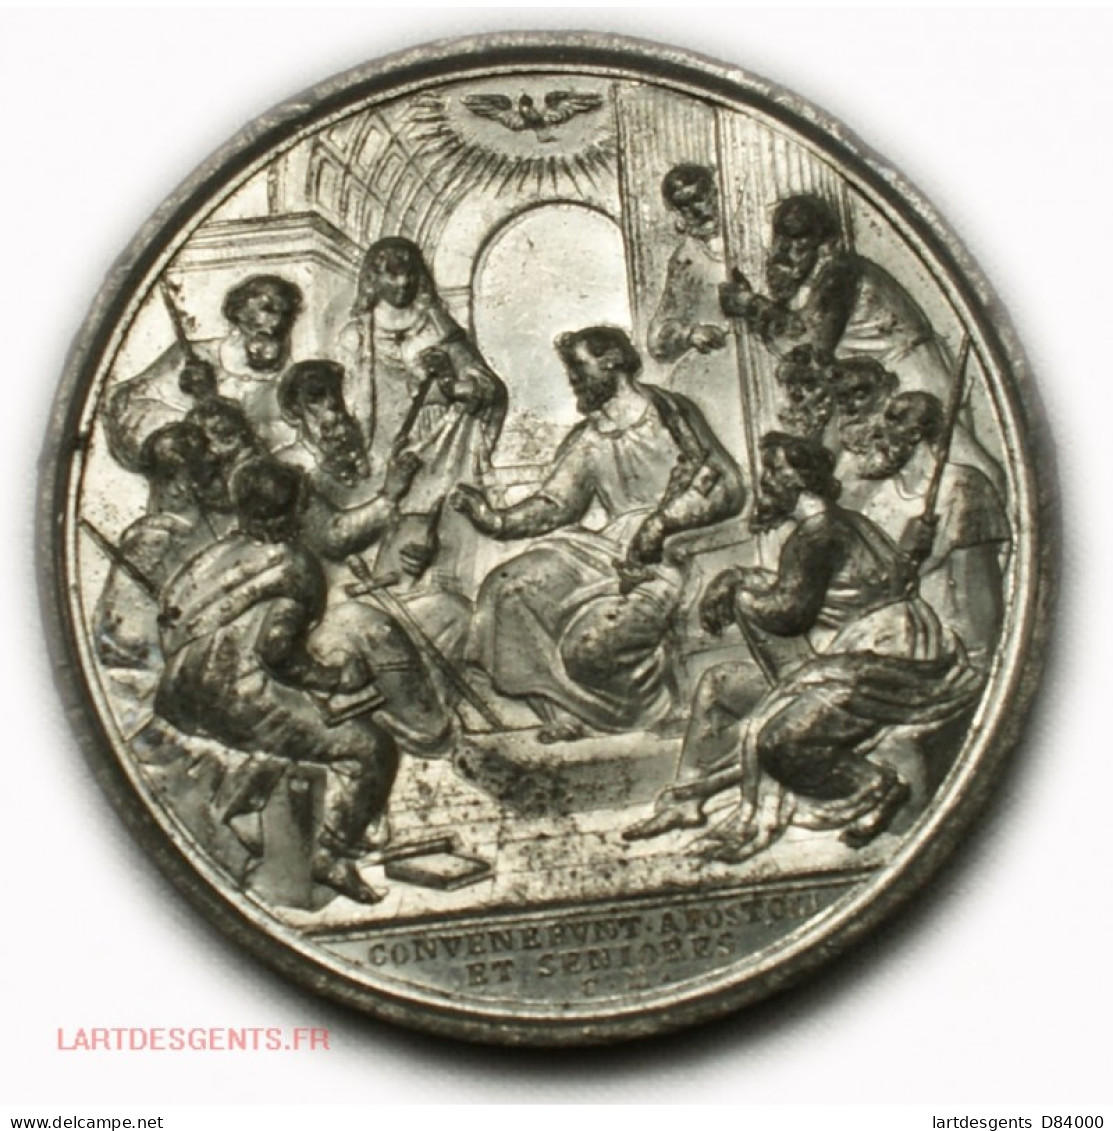 Ancienne Médaille PIUS IX, CONVENERVNT: APOSTOLI ET SENIORES - Royal / Of Nobility